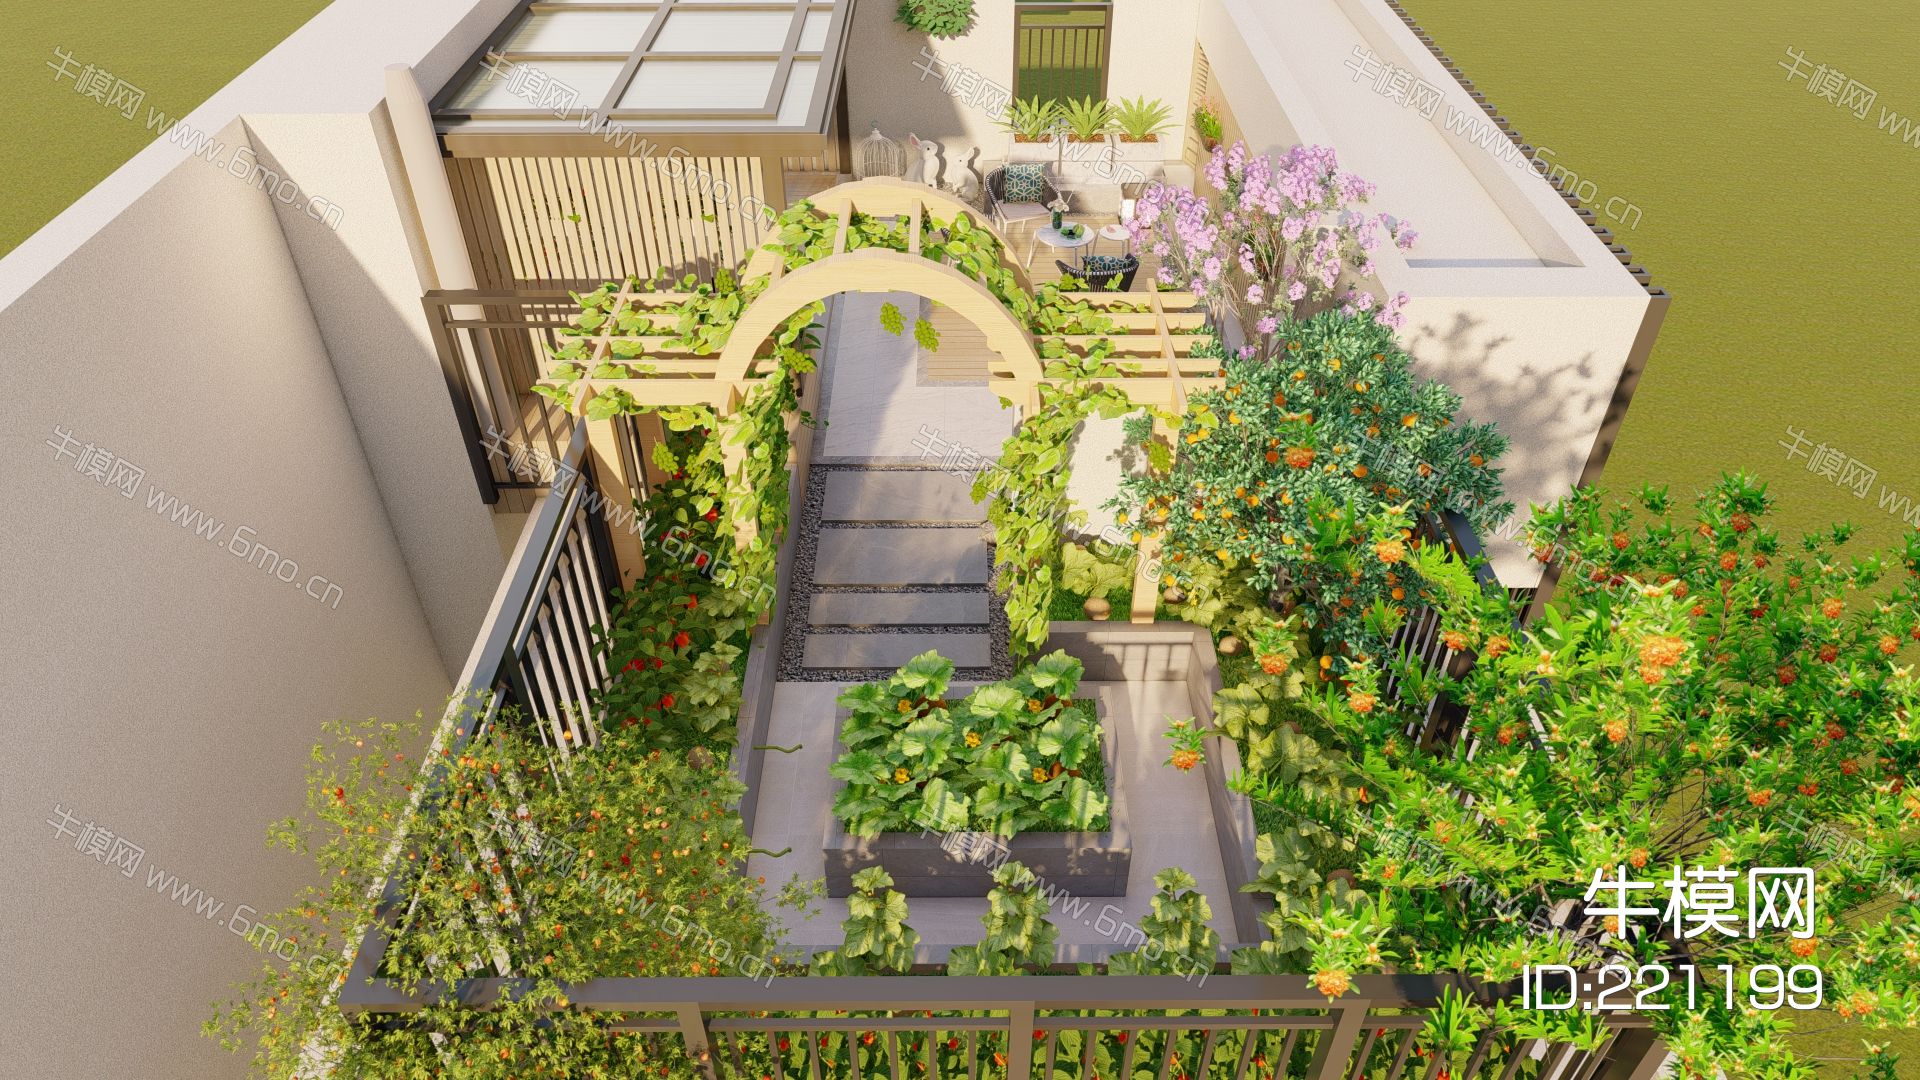 现代花园庭院景观 景墙 休闲座凳 灯具 屋顶花园 菜地 花架 洗衣区